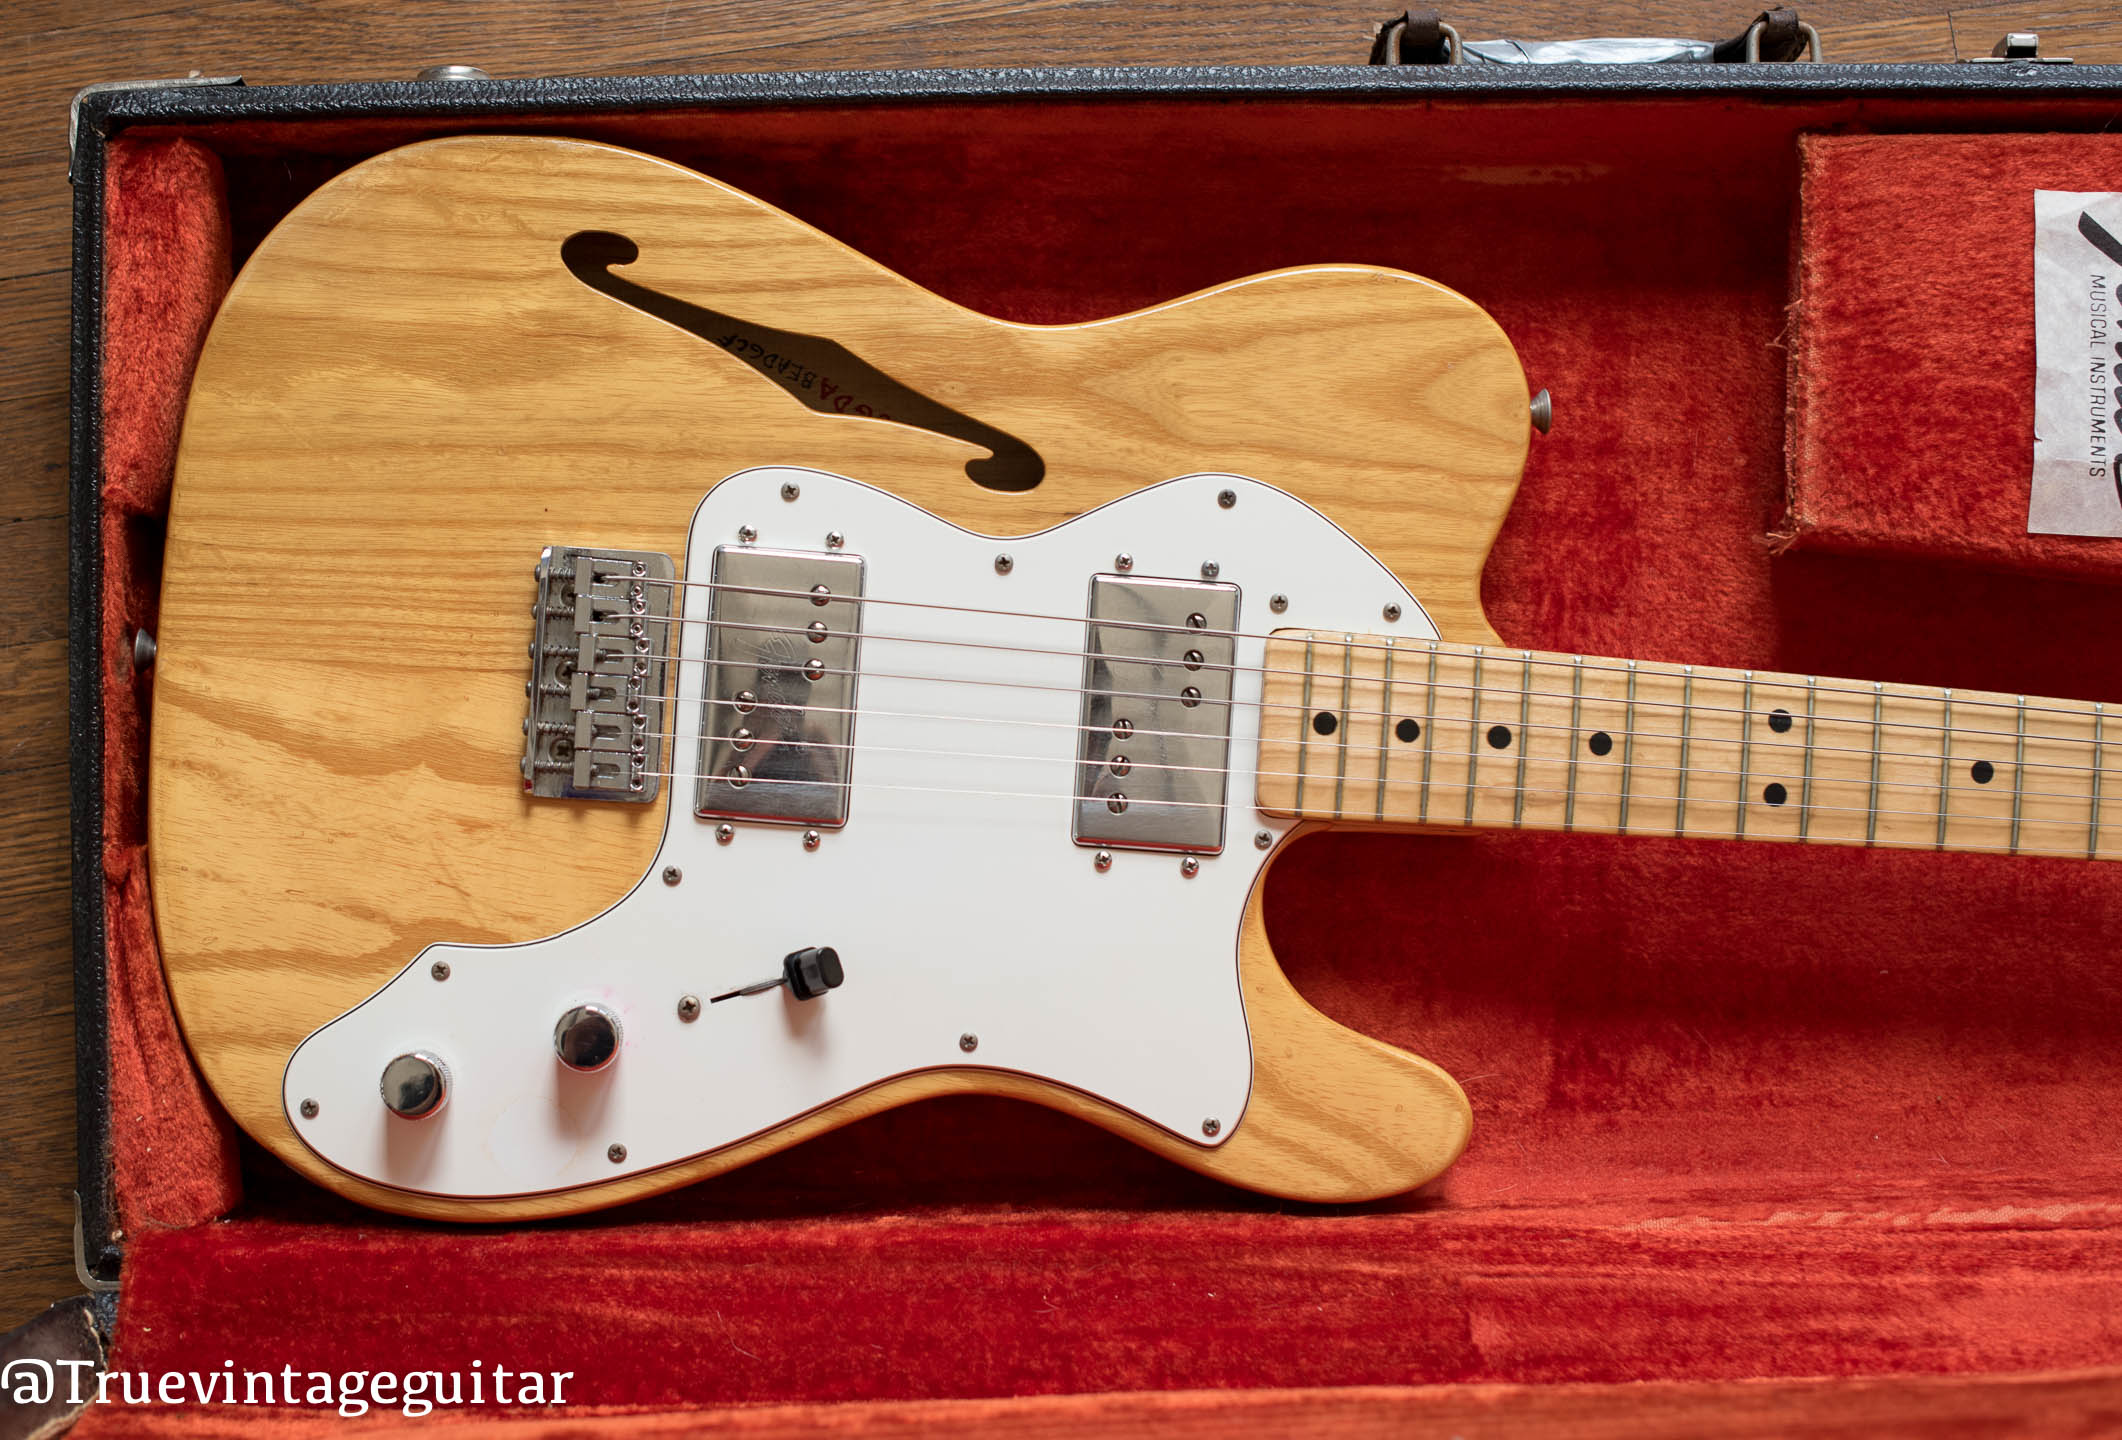 Vintage Fender Telecaster guitar